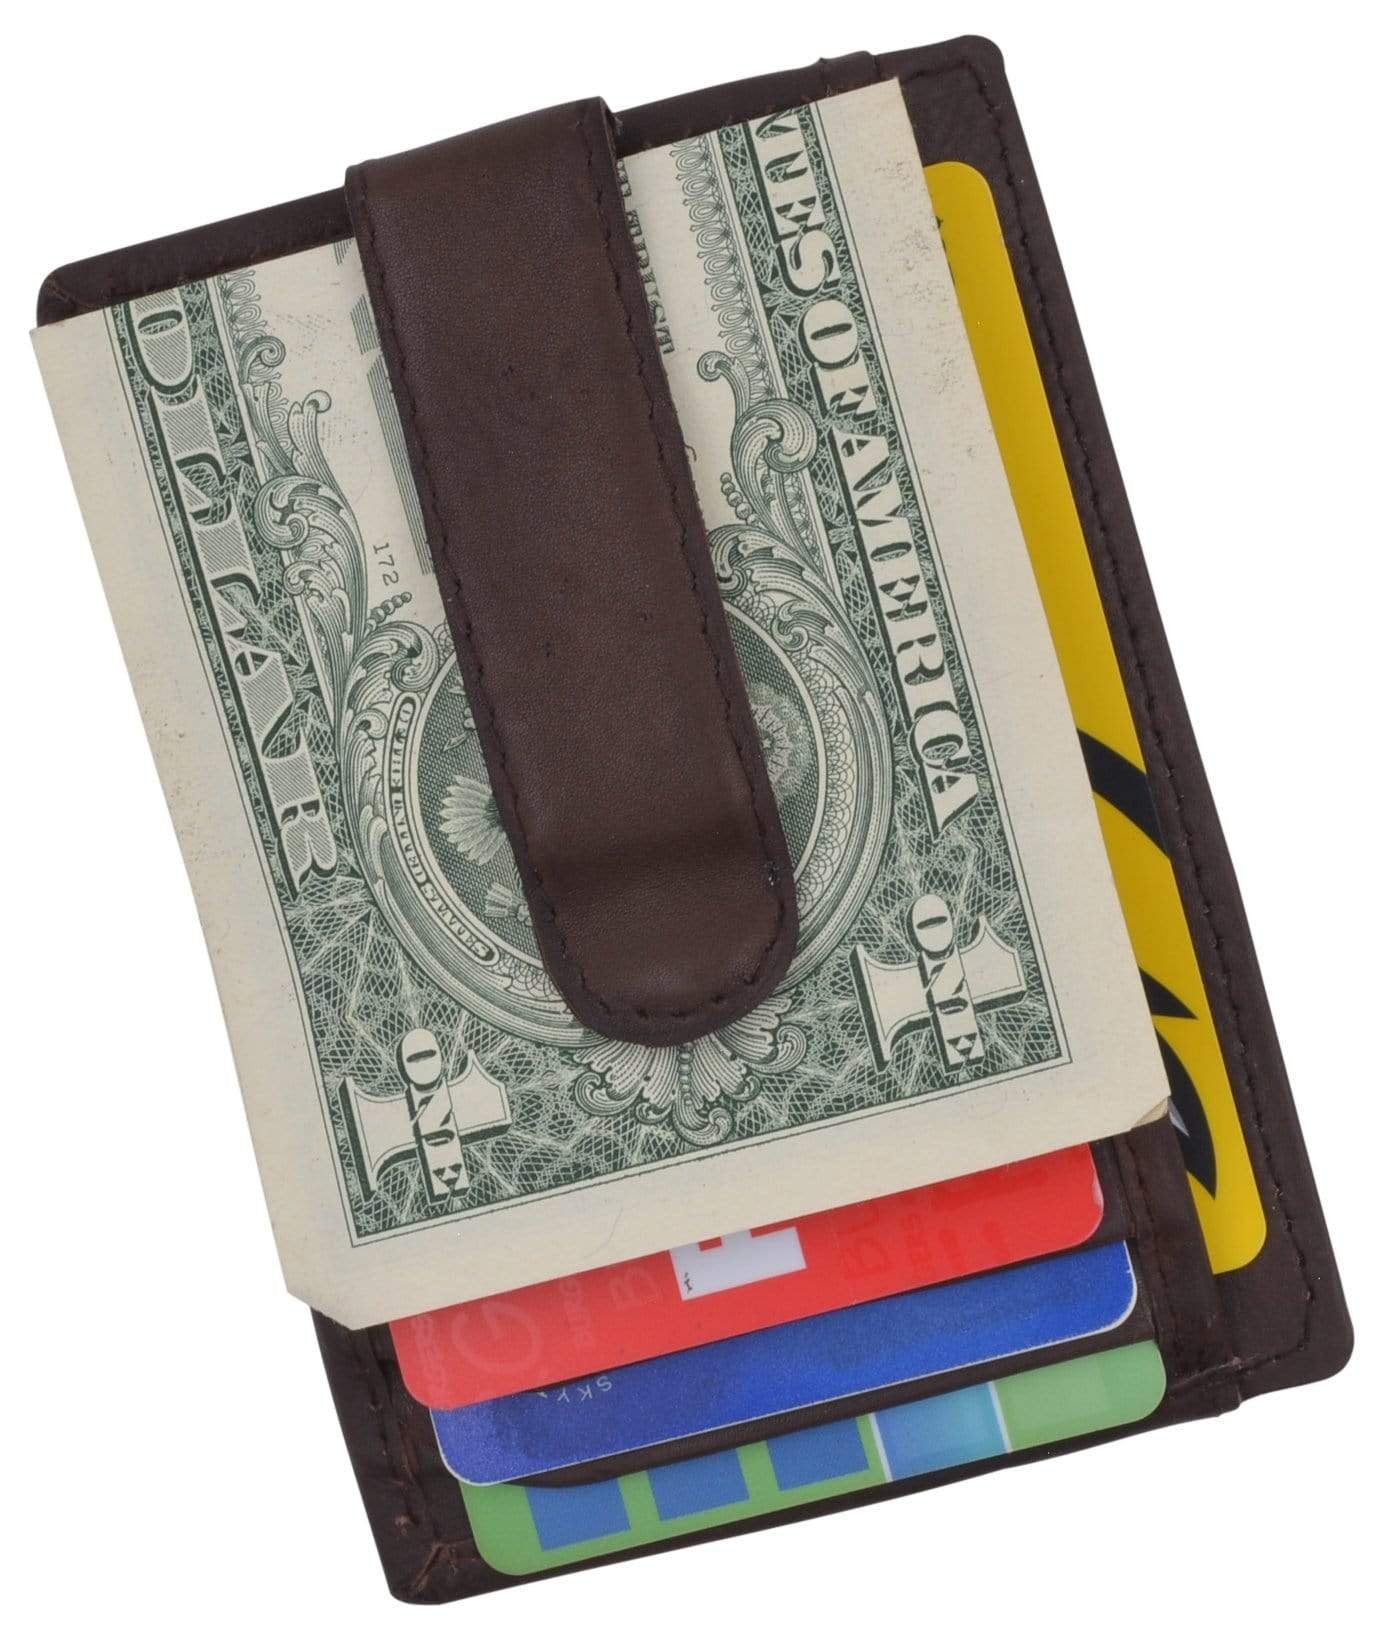 Slim Leather Wallet, Money Clip, Credit Card Holder